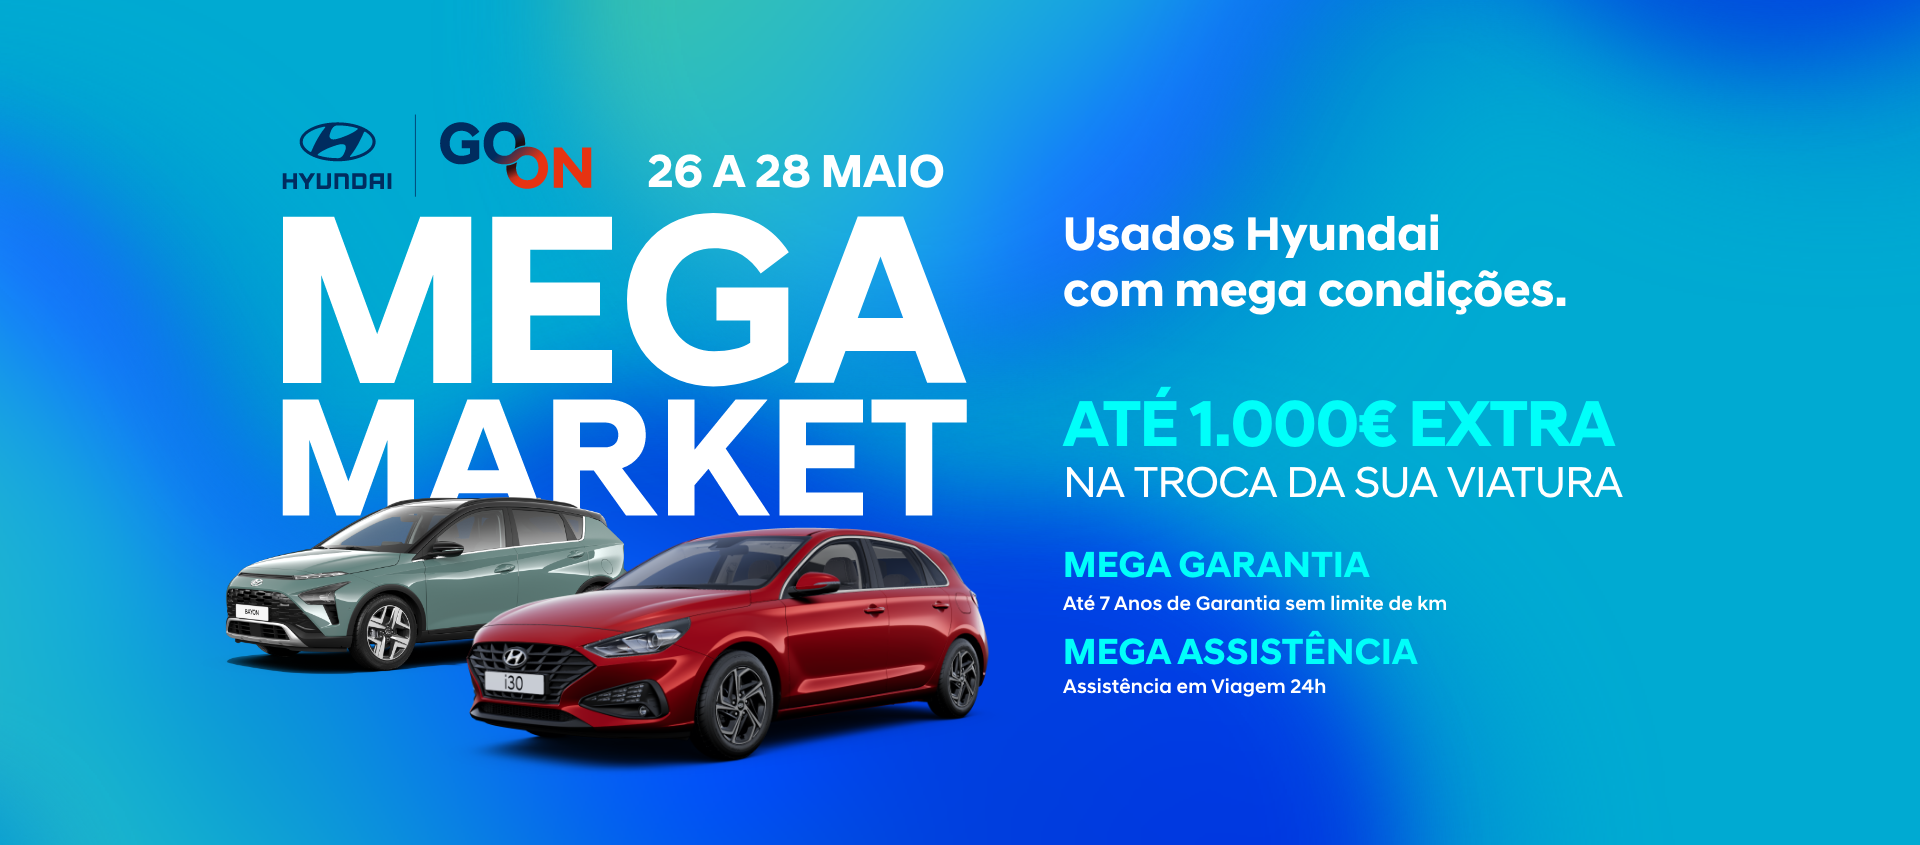 Hyundai Go On Mega Market - o maior evento de viaturas usadas da Hyundai